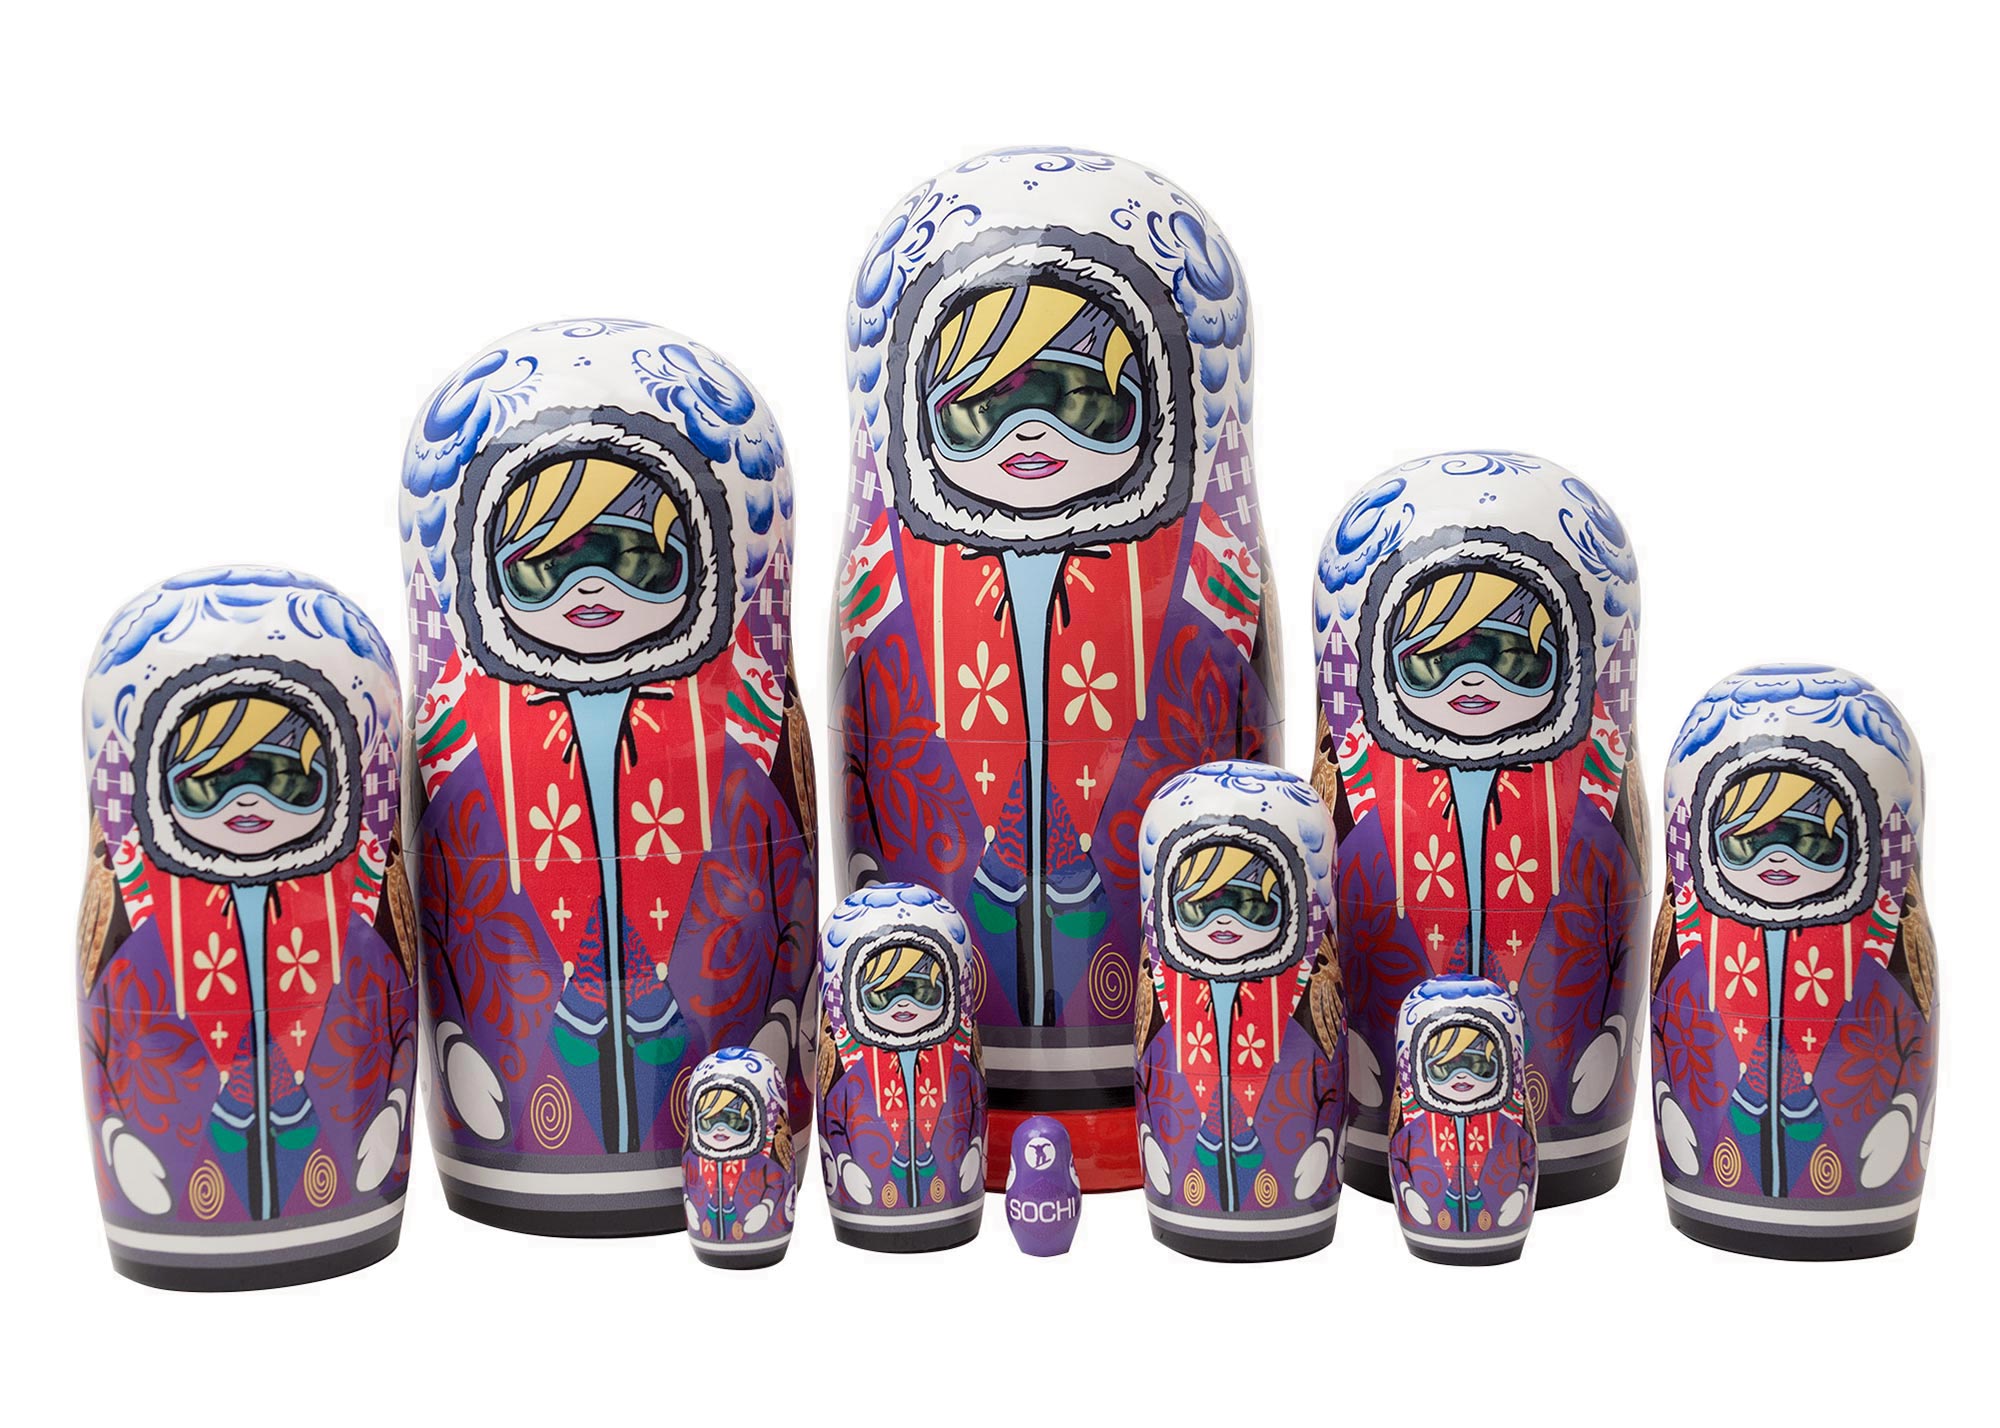 Buy Sochi Slopestyle Nesting Doll 10pc./11" at GoldenCockerel.com